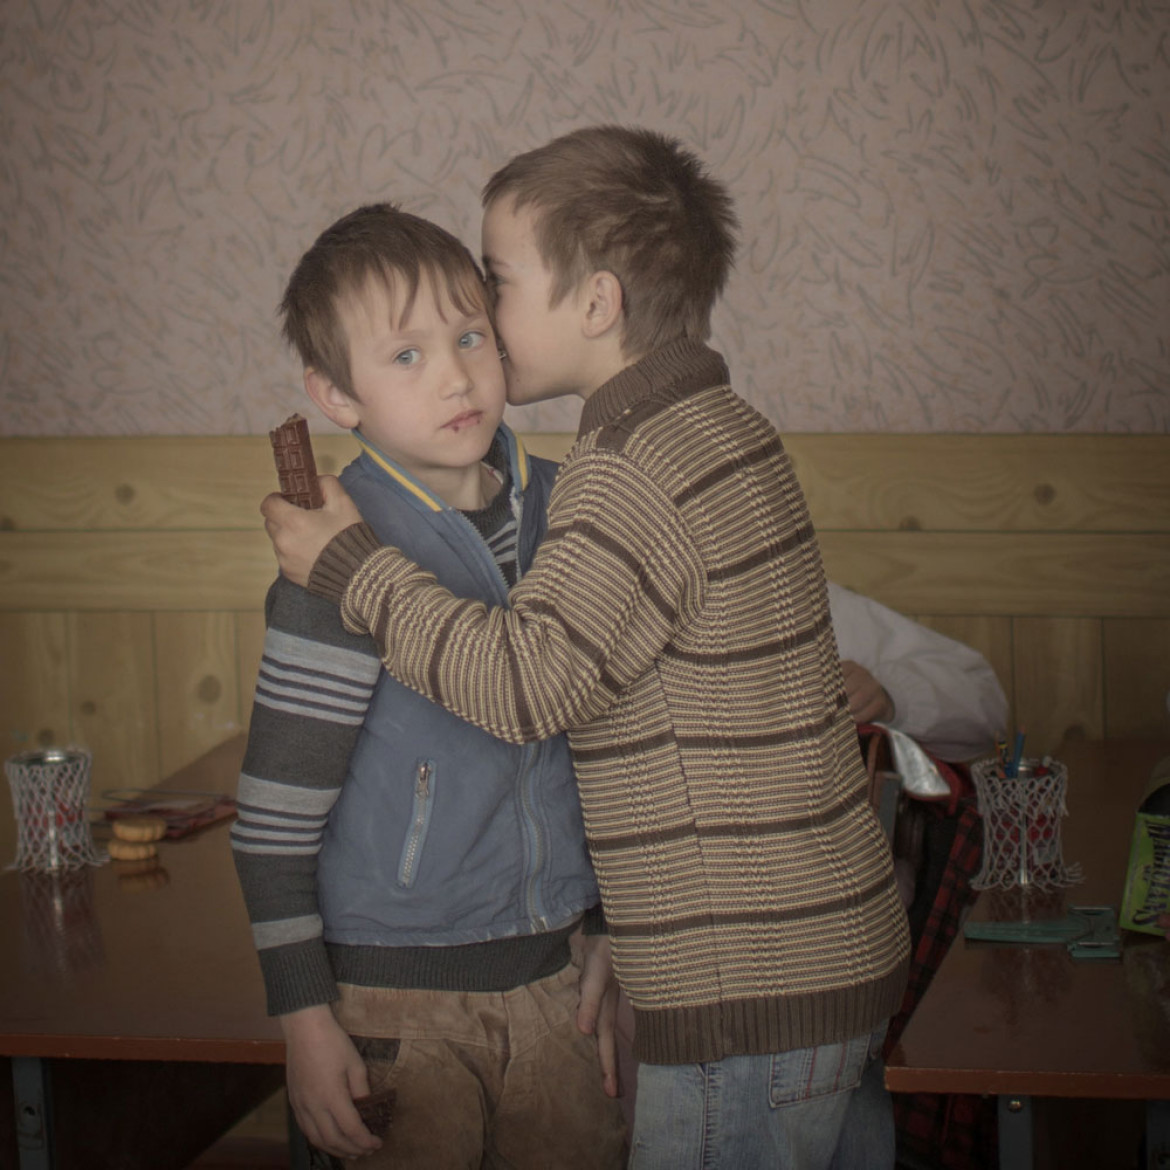 Bracia bliźniacy Igor i Artur rozdają czekoladki kolegom, świętując w ten sposób swoje dziewiąte urodziny. Gdy mieli dwa lata, ich matka wyjechała do pracy w Moskwie, po pewnym czasie zmarła. Chłopcy nie mają ojca. Są jednymi z tysięcy dzieci wychowujących się na mołdawskiej wsi bez rodziców. Fot. Åsa Sjöström, Szwecja, Moment Agency / INSTITUTE dla Socionomen / UNICEF